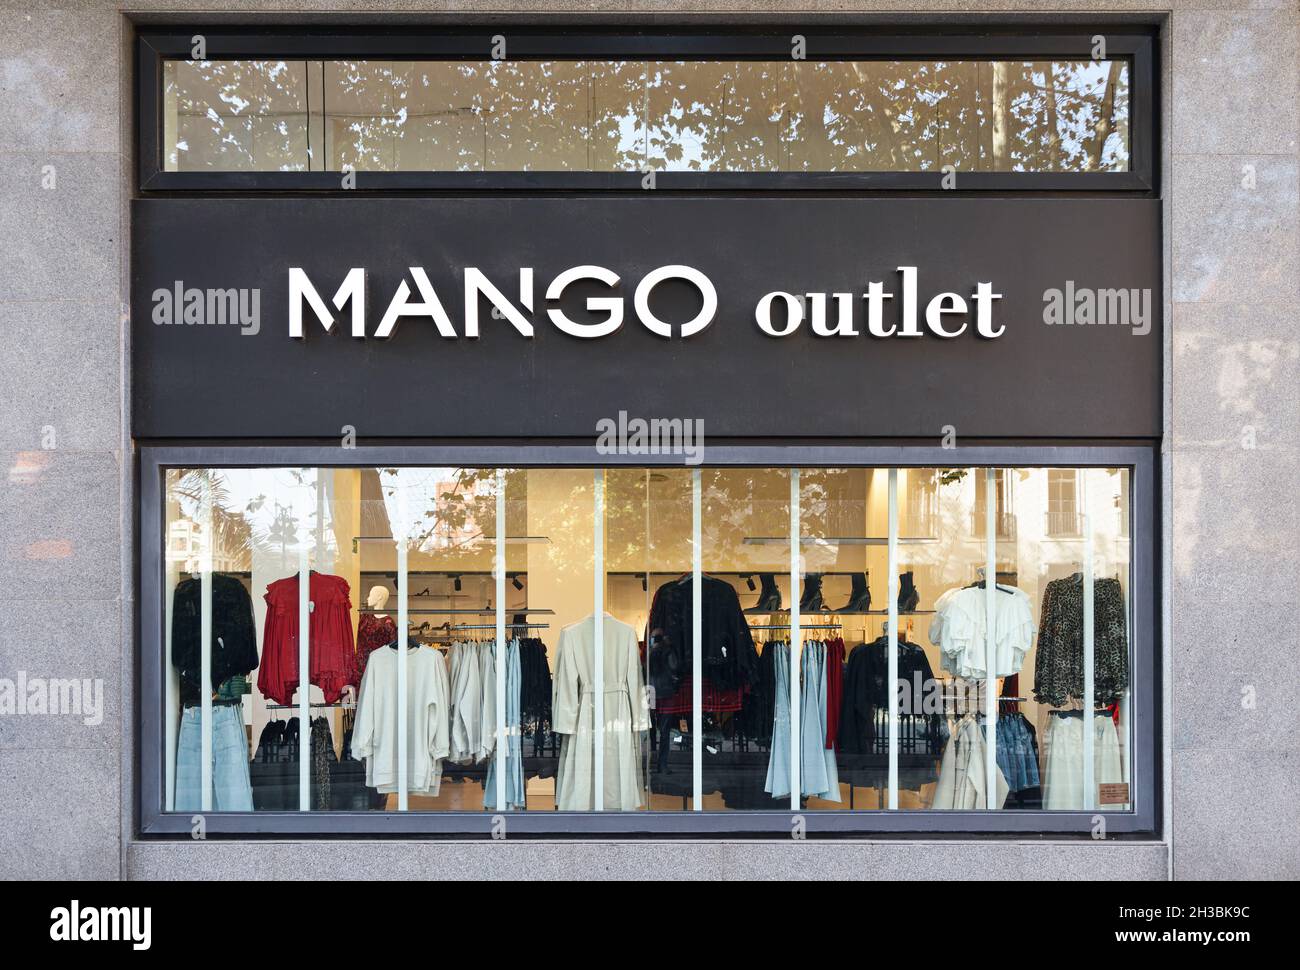 Mango outlet immagini e fotografie stock ad alta risoluzione - Alamy